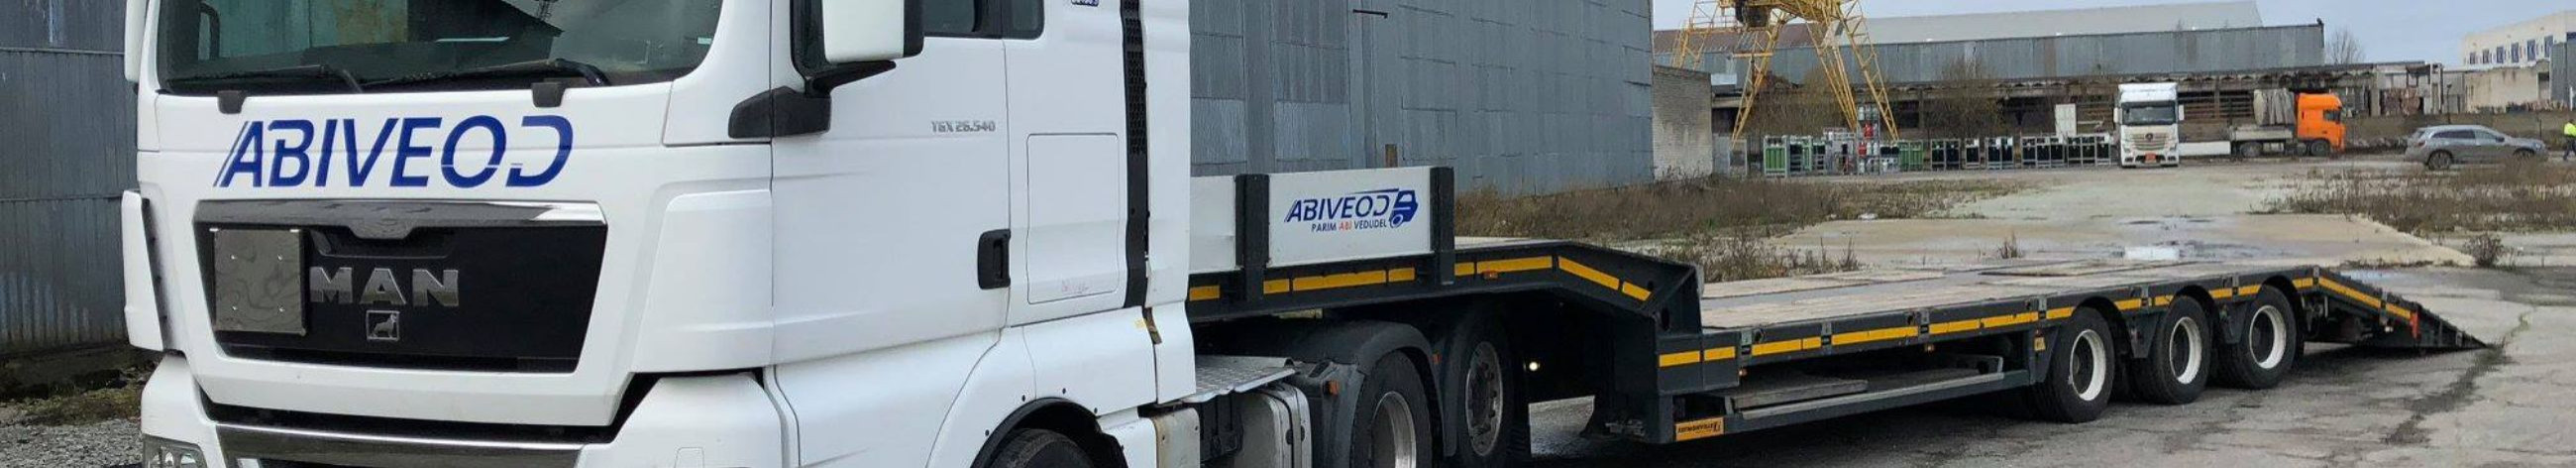 Suurim mainega ettevõte ABIVEOD OÜ, maineskoor 1990, aktiivseid äriseoseid 2. Tegutseb peamiselt valdkonnas: Kaubavedu maanteel.